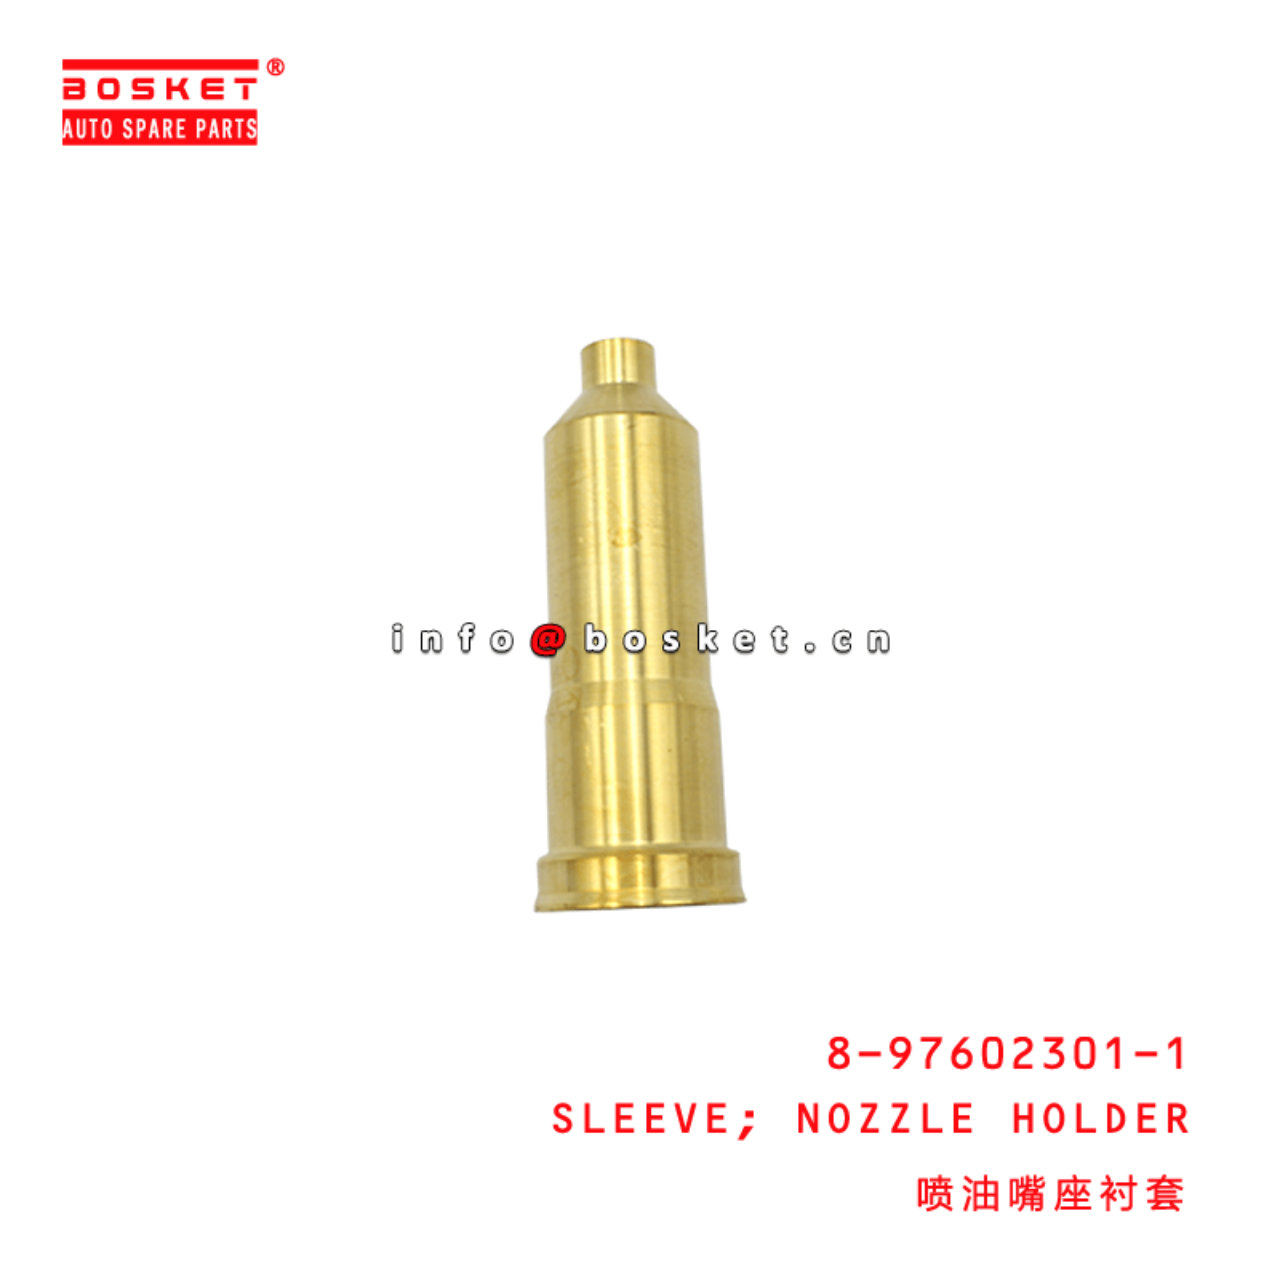 8-97602301-1 Nozzle Holder Sleeve 8976023011 Suitable for ISUZU FRR FSR 4HK1 6HK1